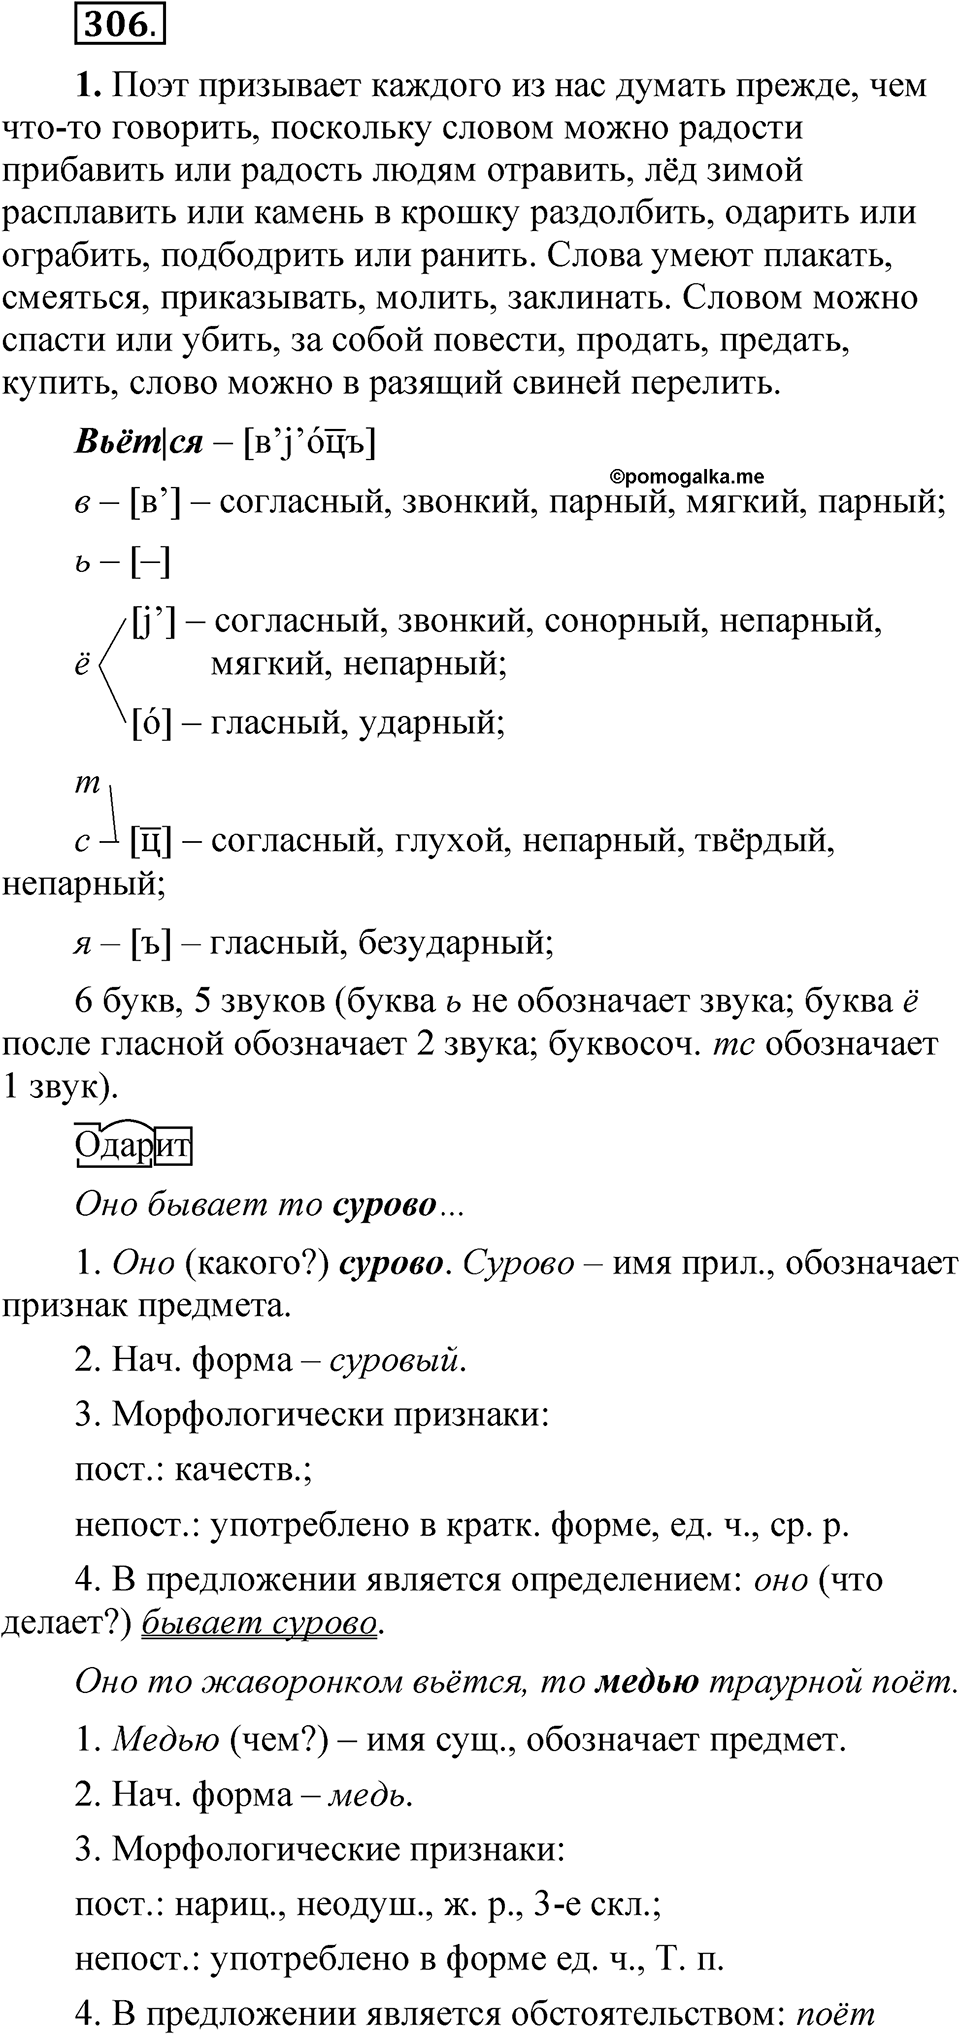 страница 214 упражнение 306 русский язык 5 класс Быстрова, Кибирева 2 часть 2021 год